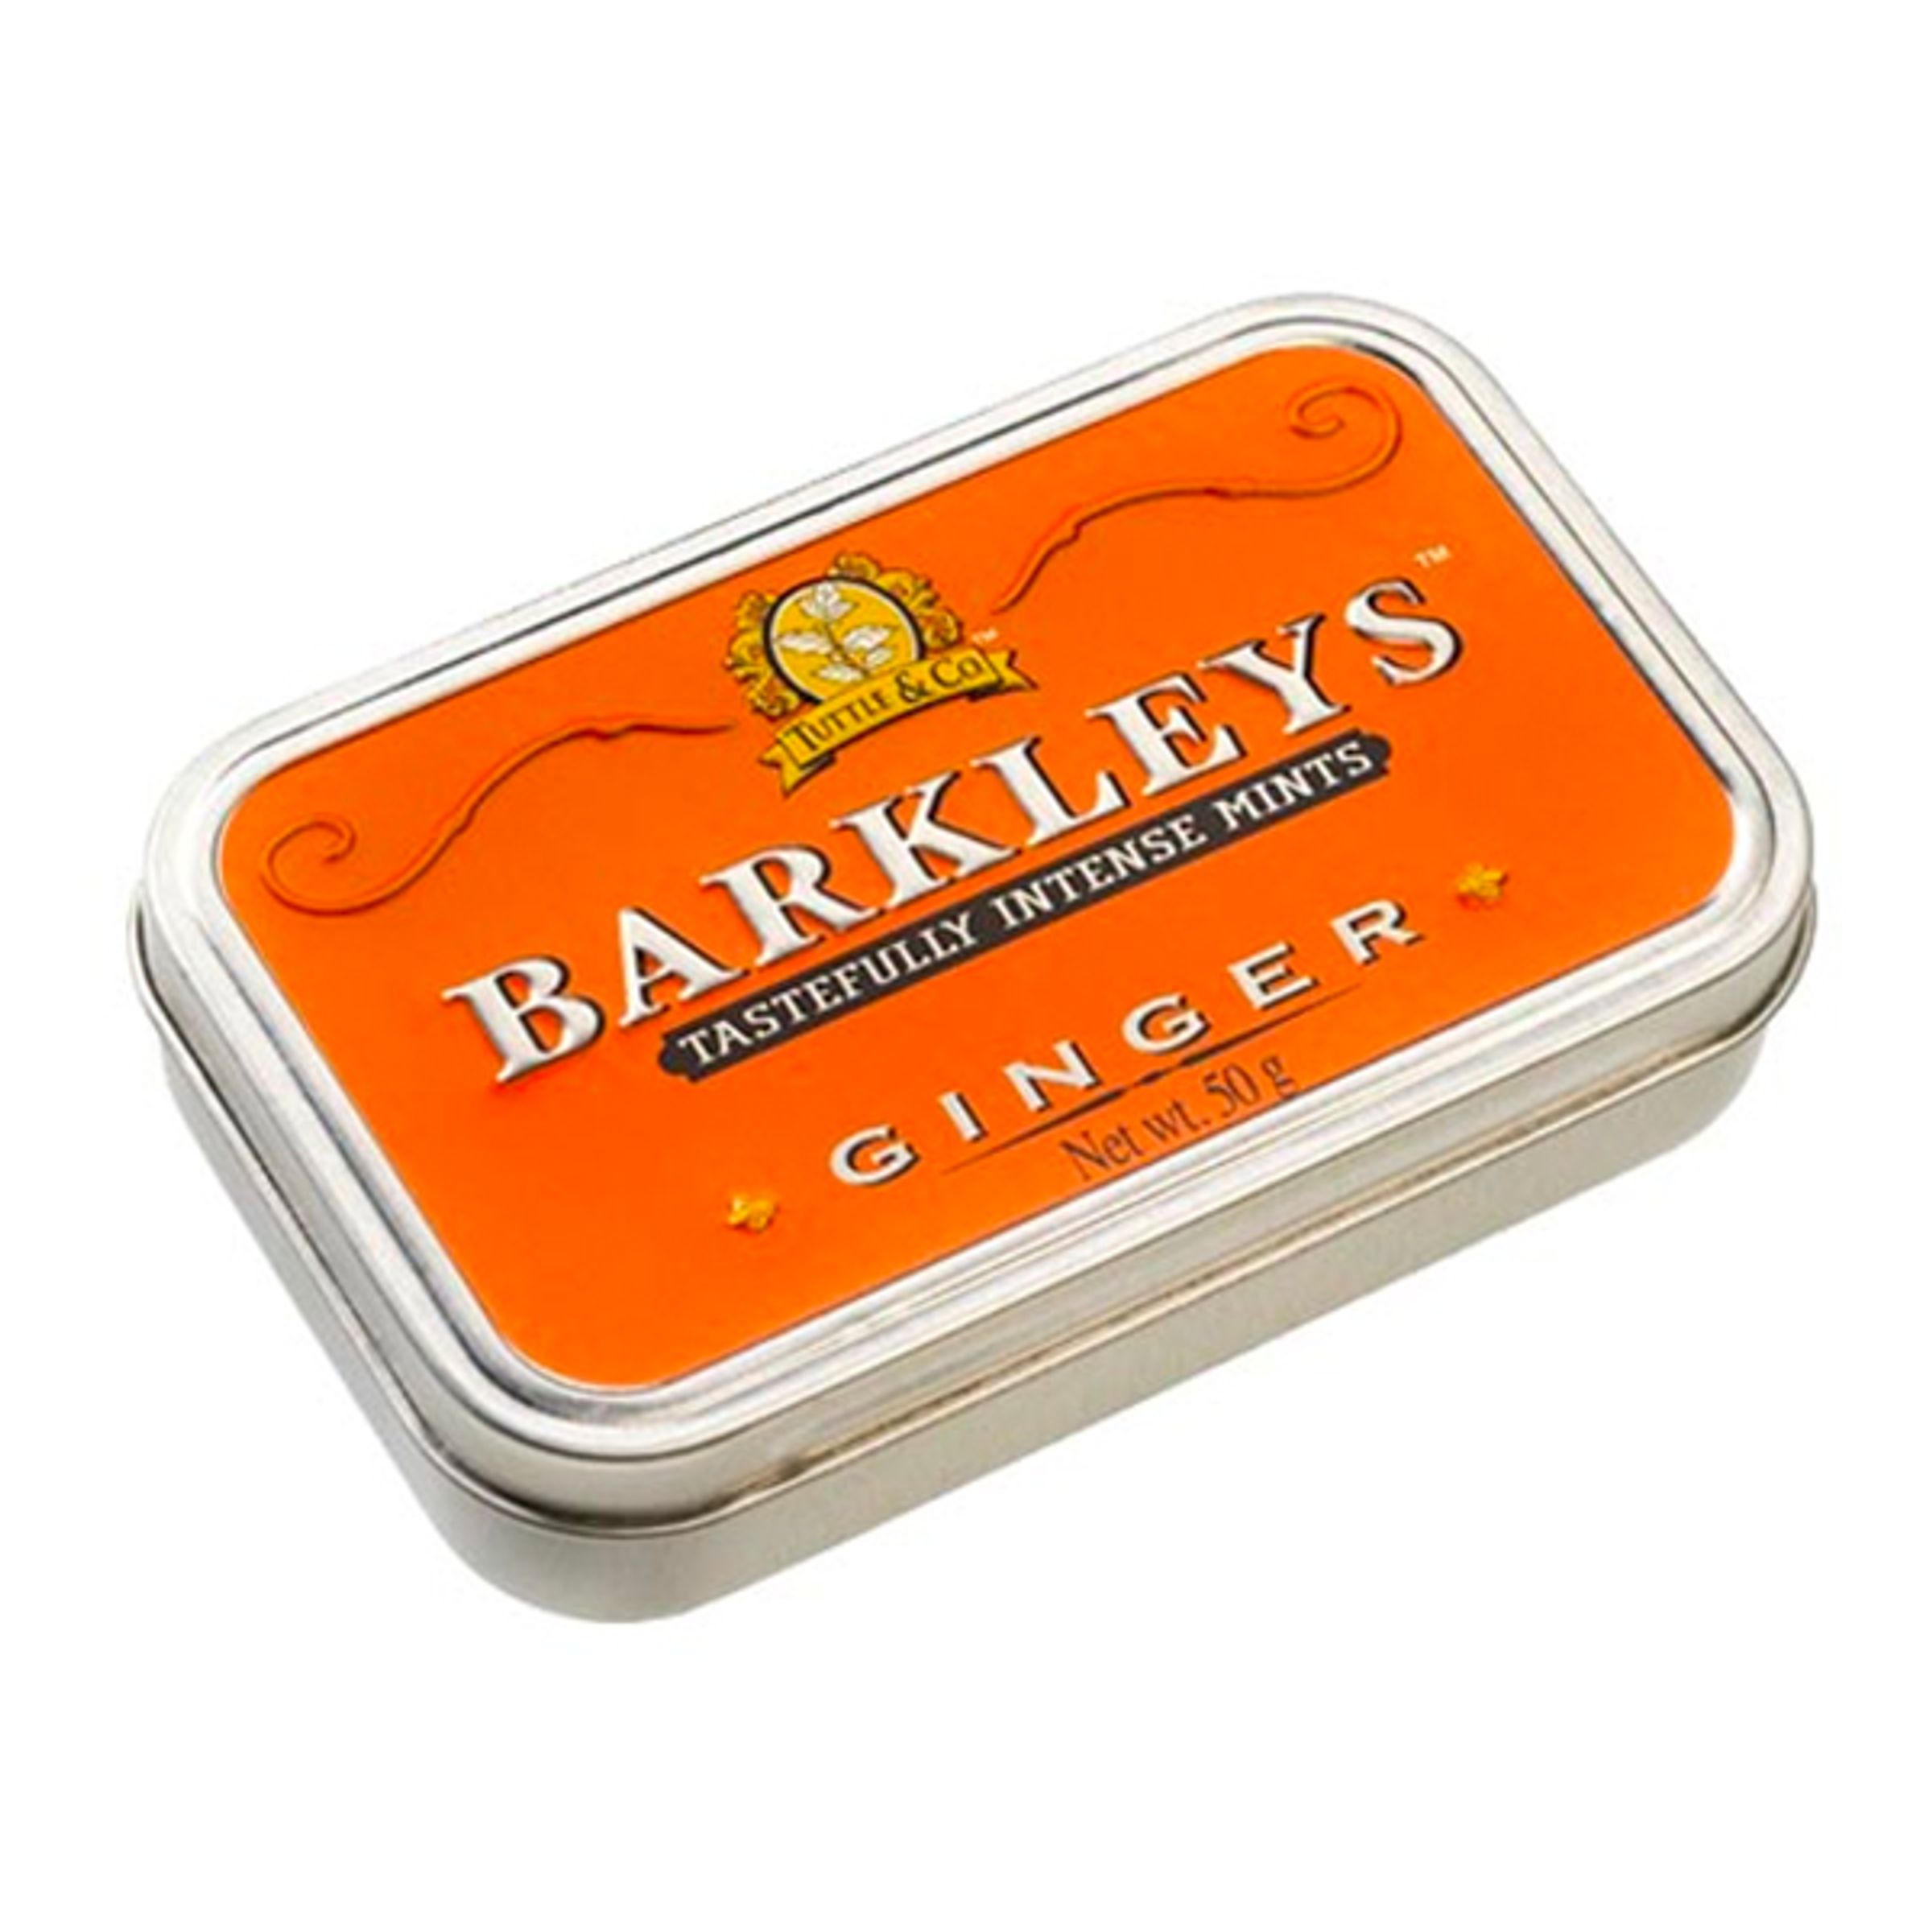 Barkleys Ingefära - 1-pack